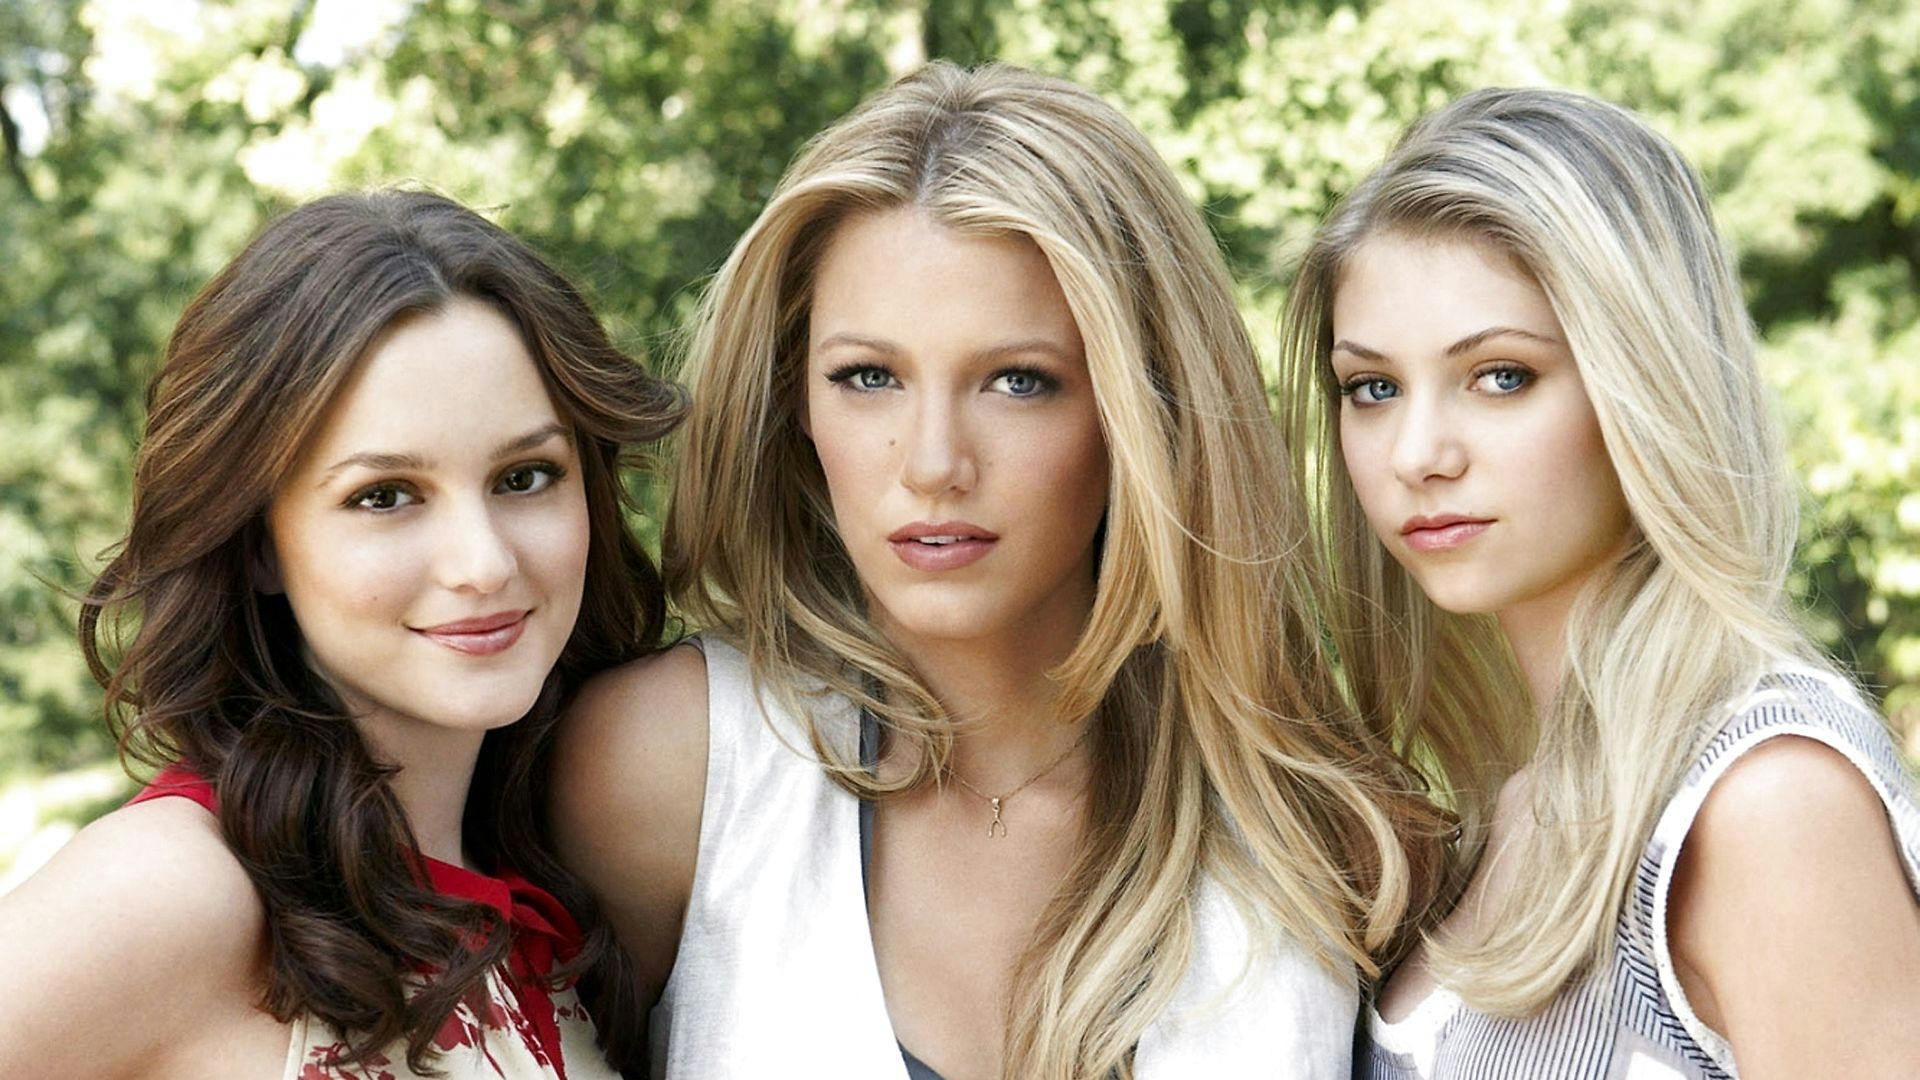 Fra venstre: Leighton Meester, Blake Lively og Taylor Momsen fra den hyperpopulære ungdomsserie "Gossip Girl", der havde premiere i 2007 og kørte frem til 2012.&nbsp;
